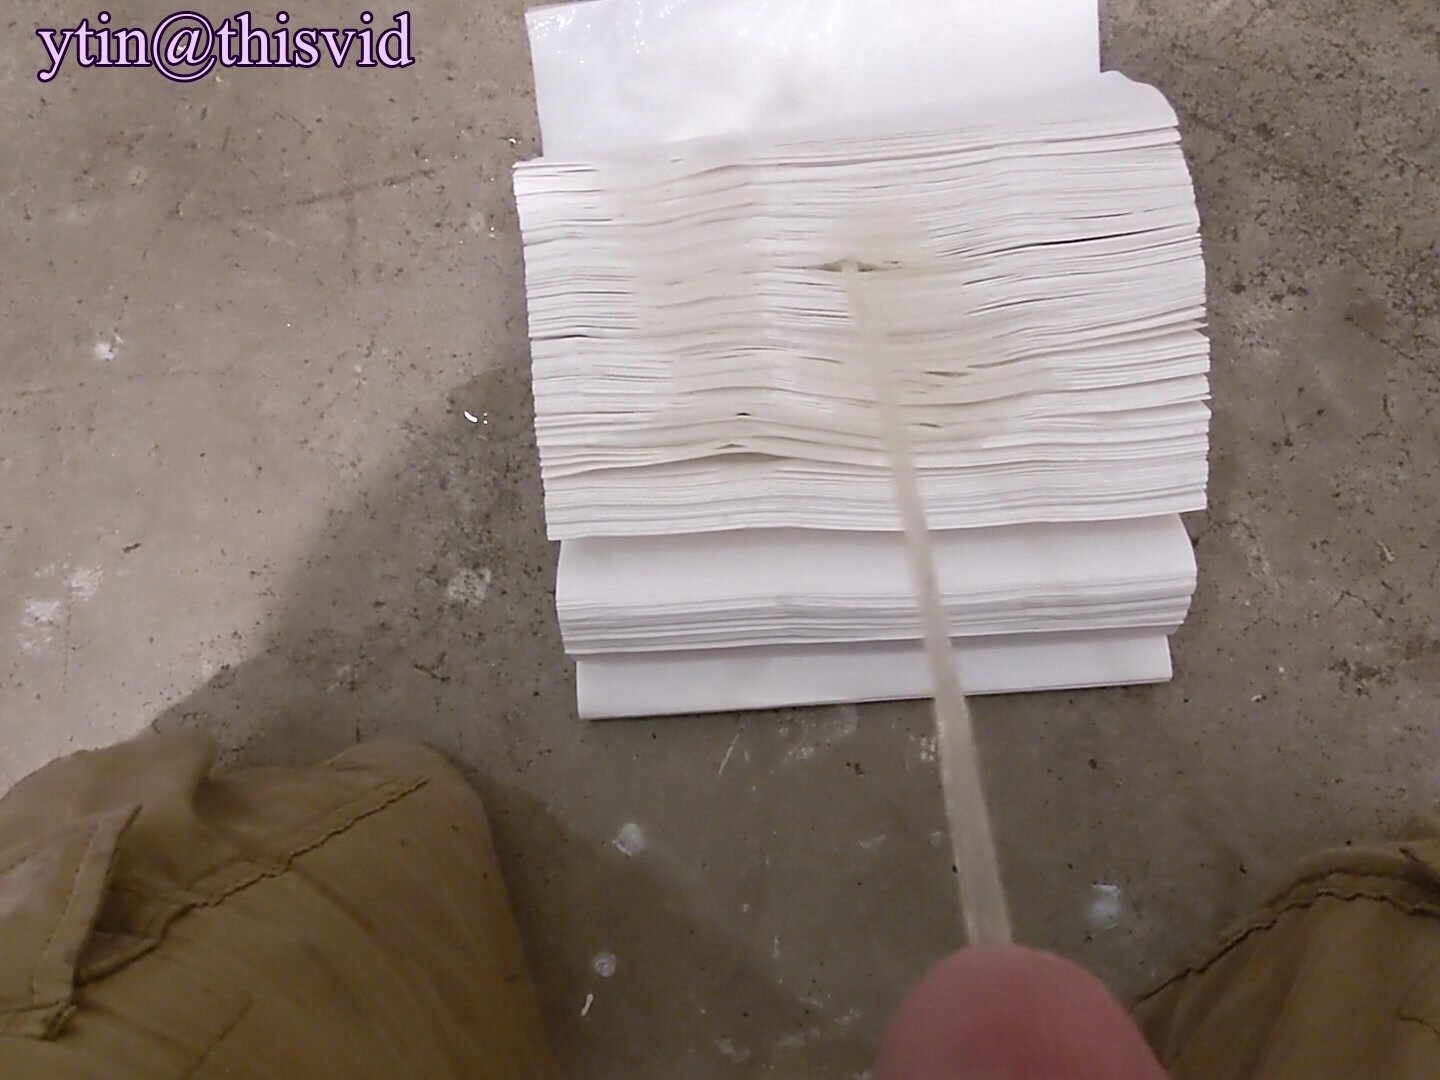 Public Restroom Paper Towel Dispenser Piss